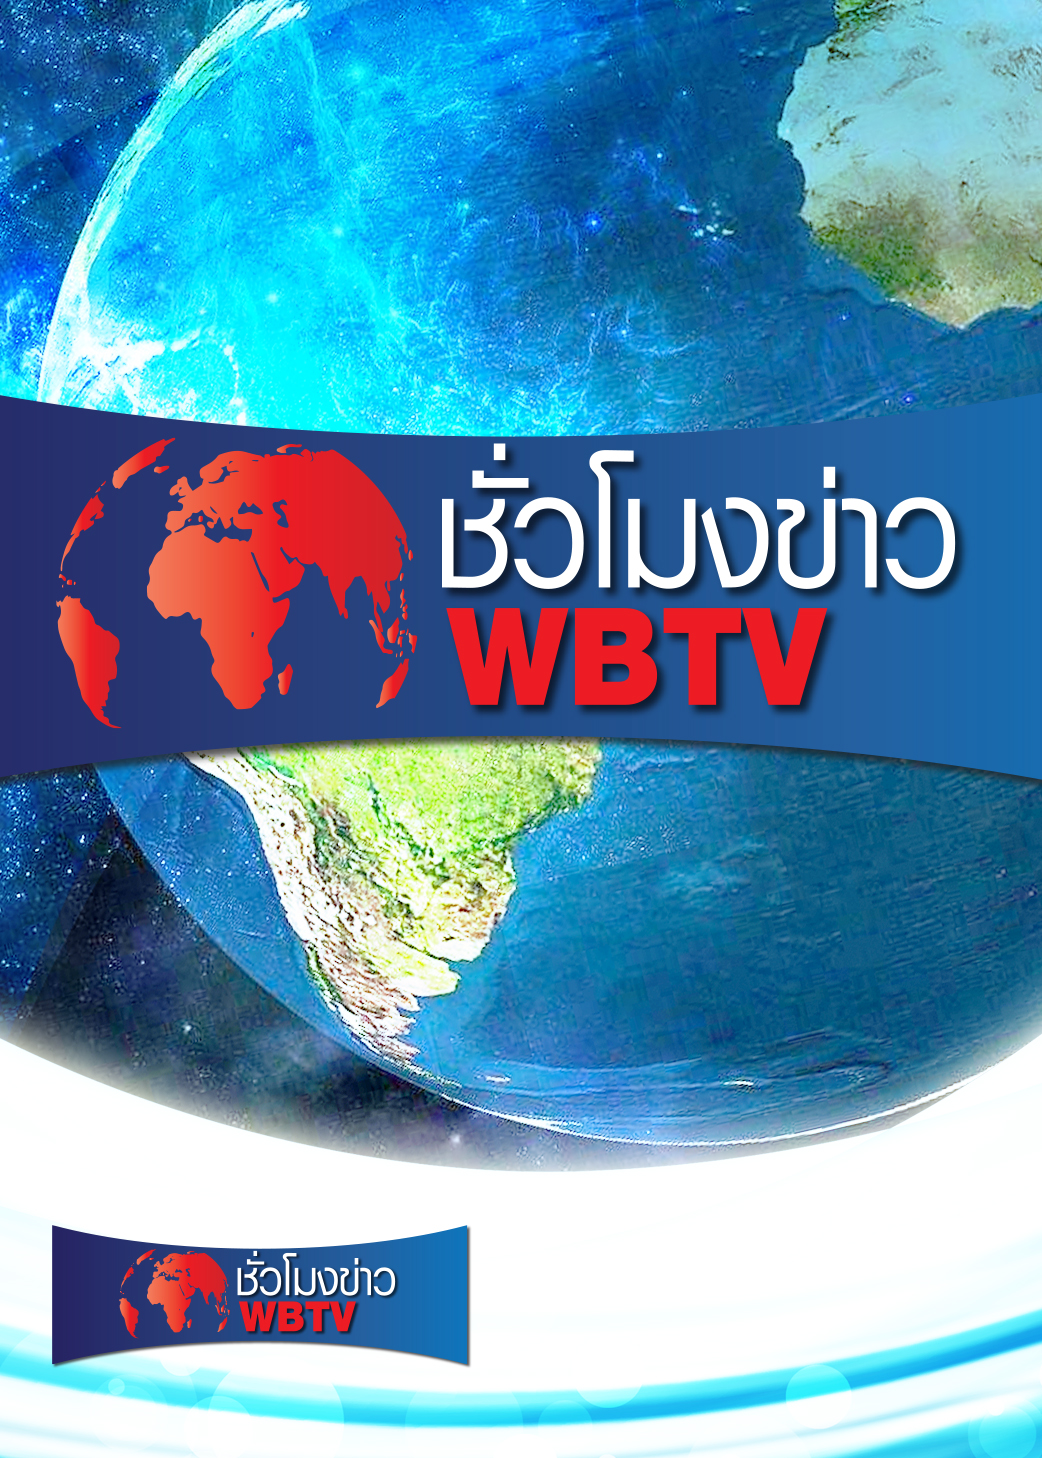 ชั่วโมงข่าว WBTV | ออกอากาศวันที่ 15 ก.ย. 64